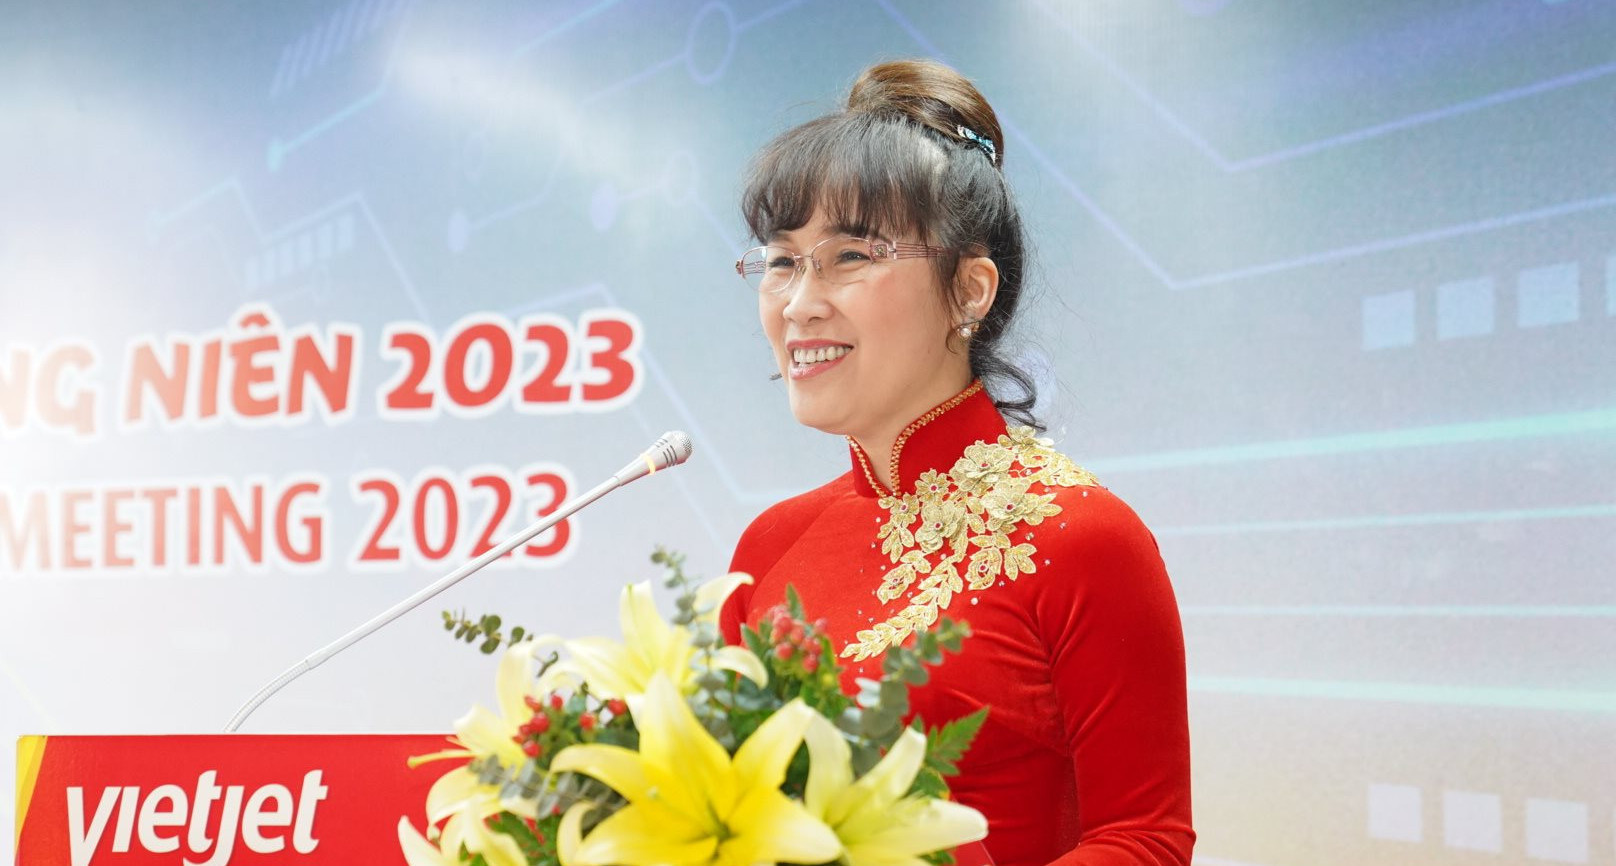 Tài sản tăng nhanh, bà Nguyễn Thị Phương Thảo vững ngôi nữ doanh nhân giàu nhất